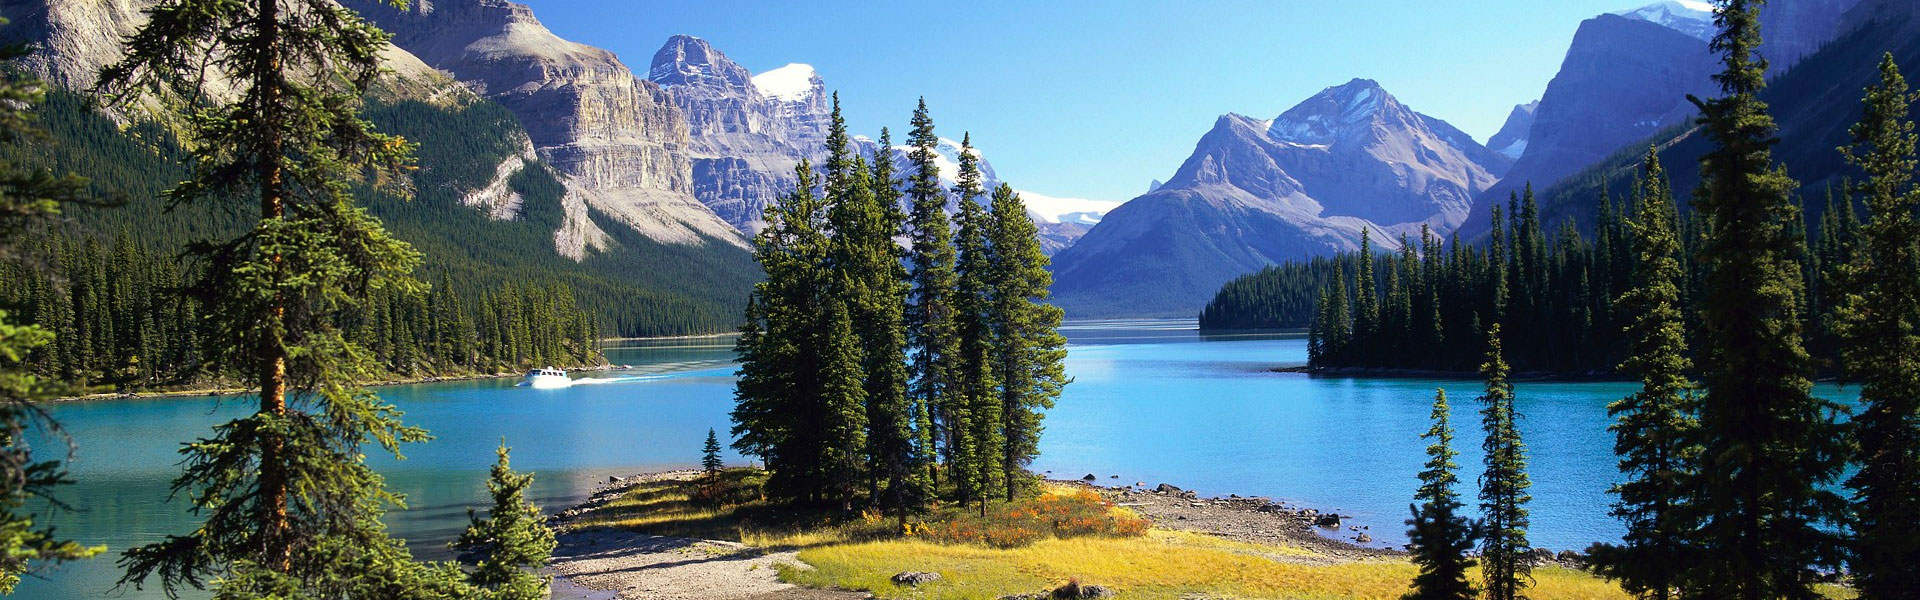 Best Jasper Vacation Packages | Jasper Train Trips, Road Trips 